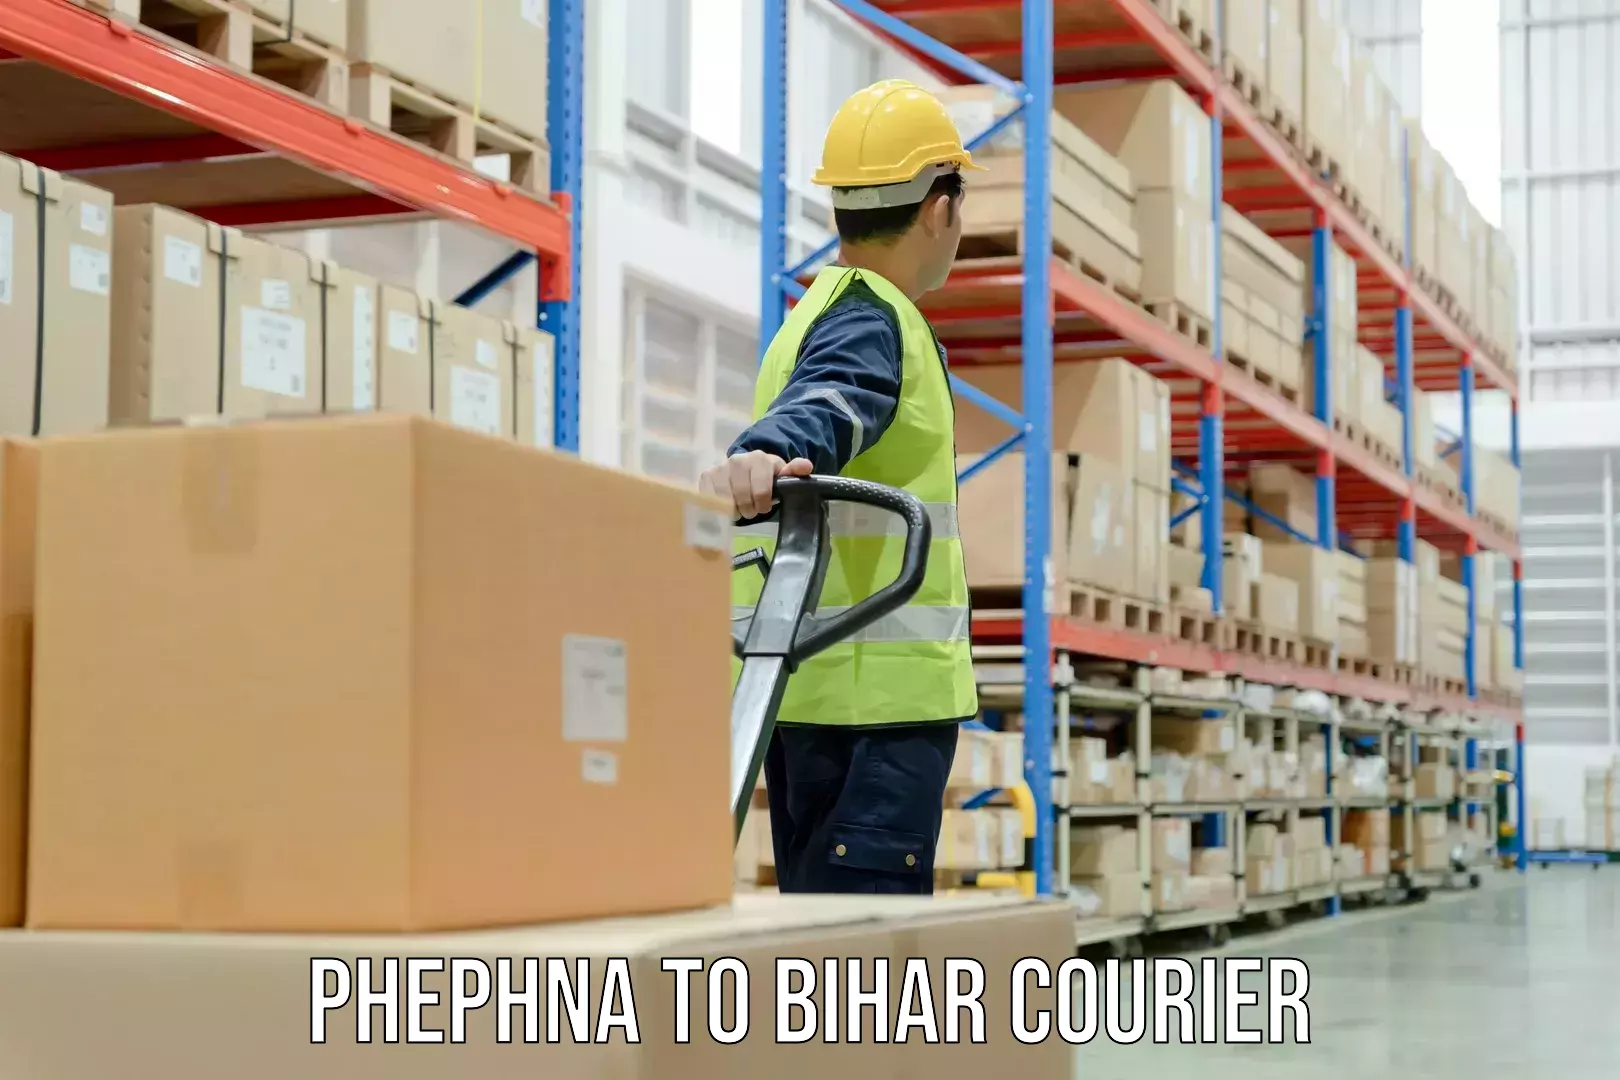 24-hour courier service Phephna to Bihar